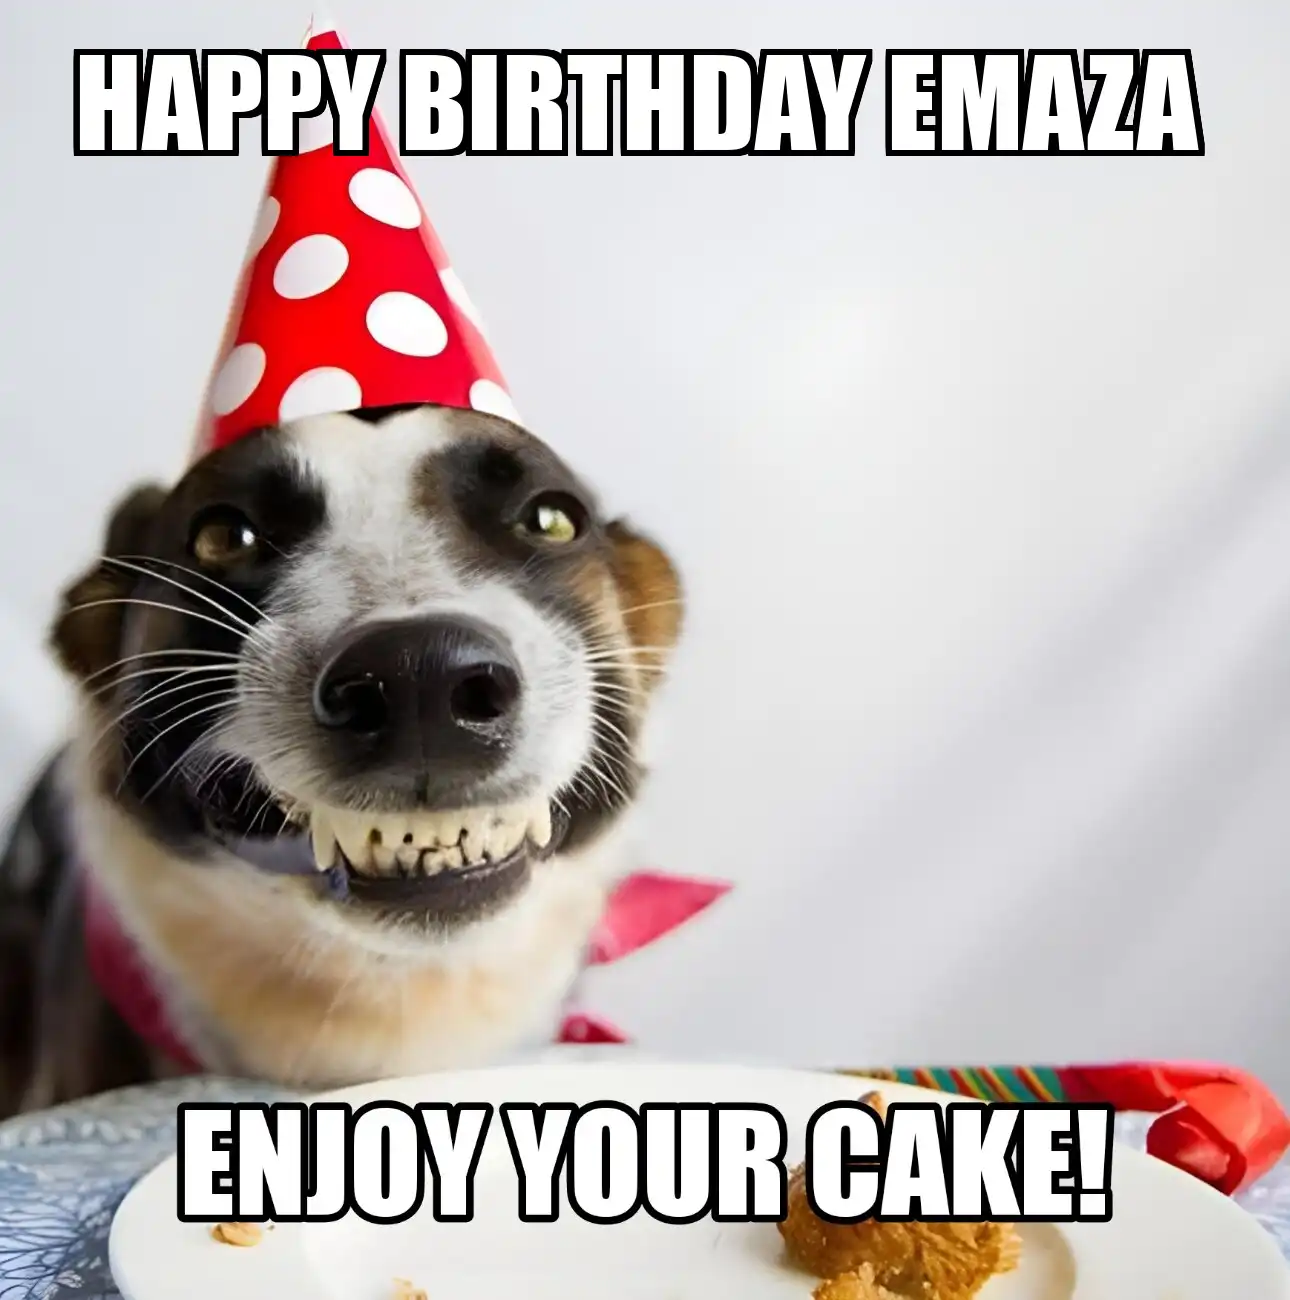 Happy Birthday Emaza Enjoy Your Cake Dog Meme